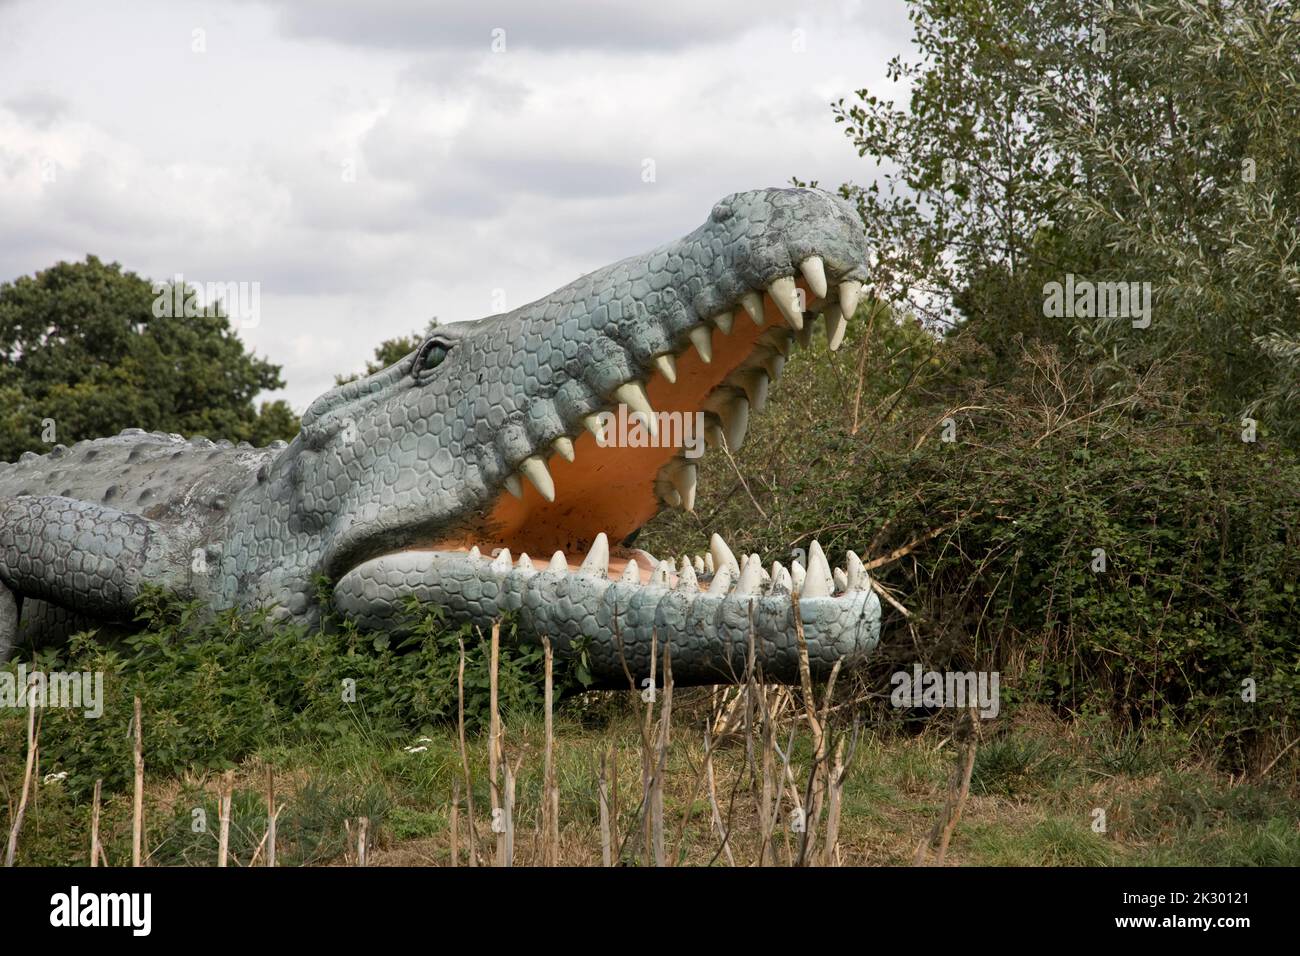 Modello LifeSize di Deinosuchus dinosauro un genere estinto di un coccodrillo alligatoroide All Things Wild, Honeybourne, UK Foto Stock